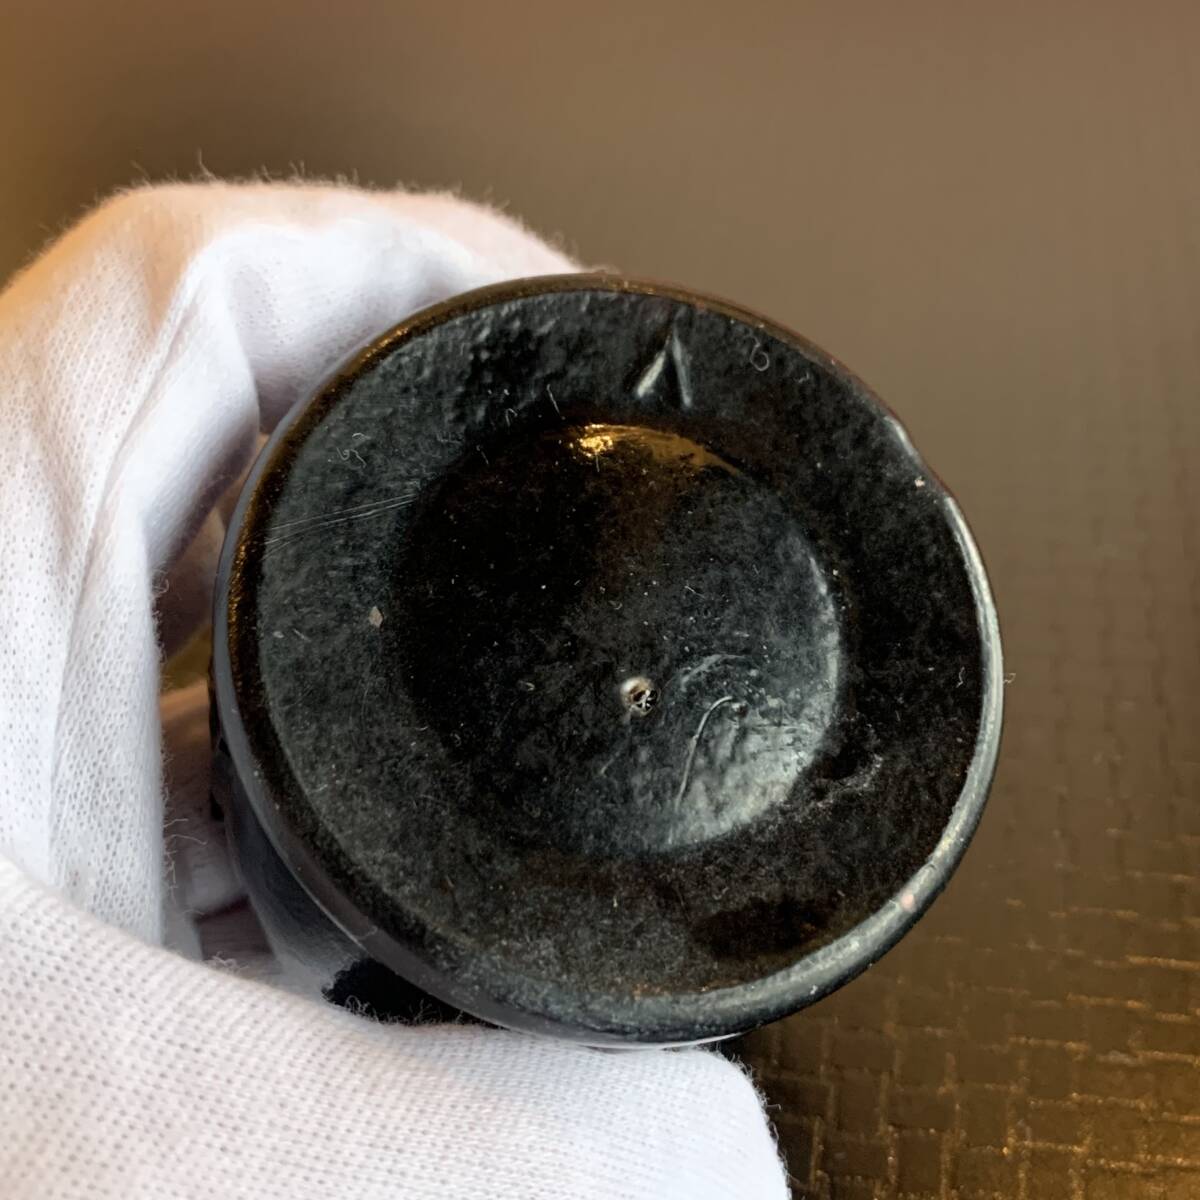 漆黒レートクレーム 検索用 レートクリーム クリーム ペロペロ ビー玉 おはじき あめや瓶 豆ランプの画像4